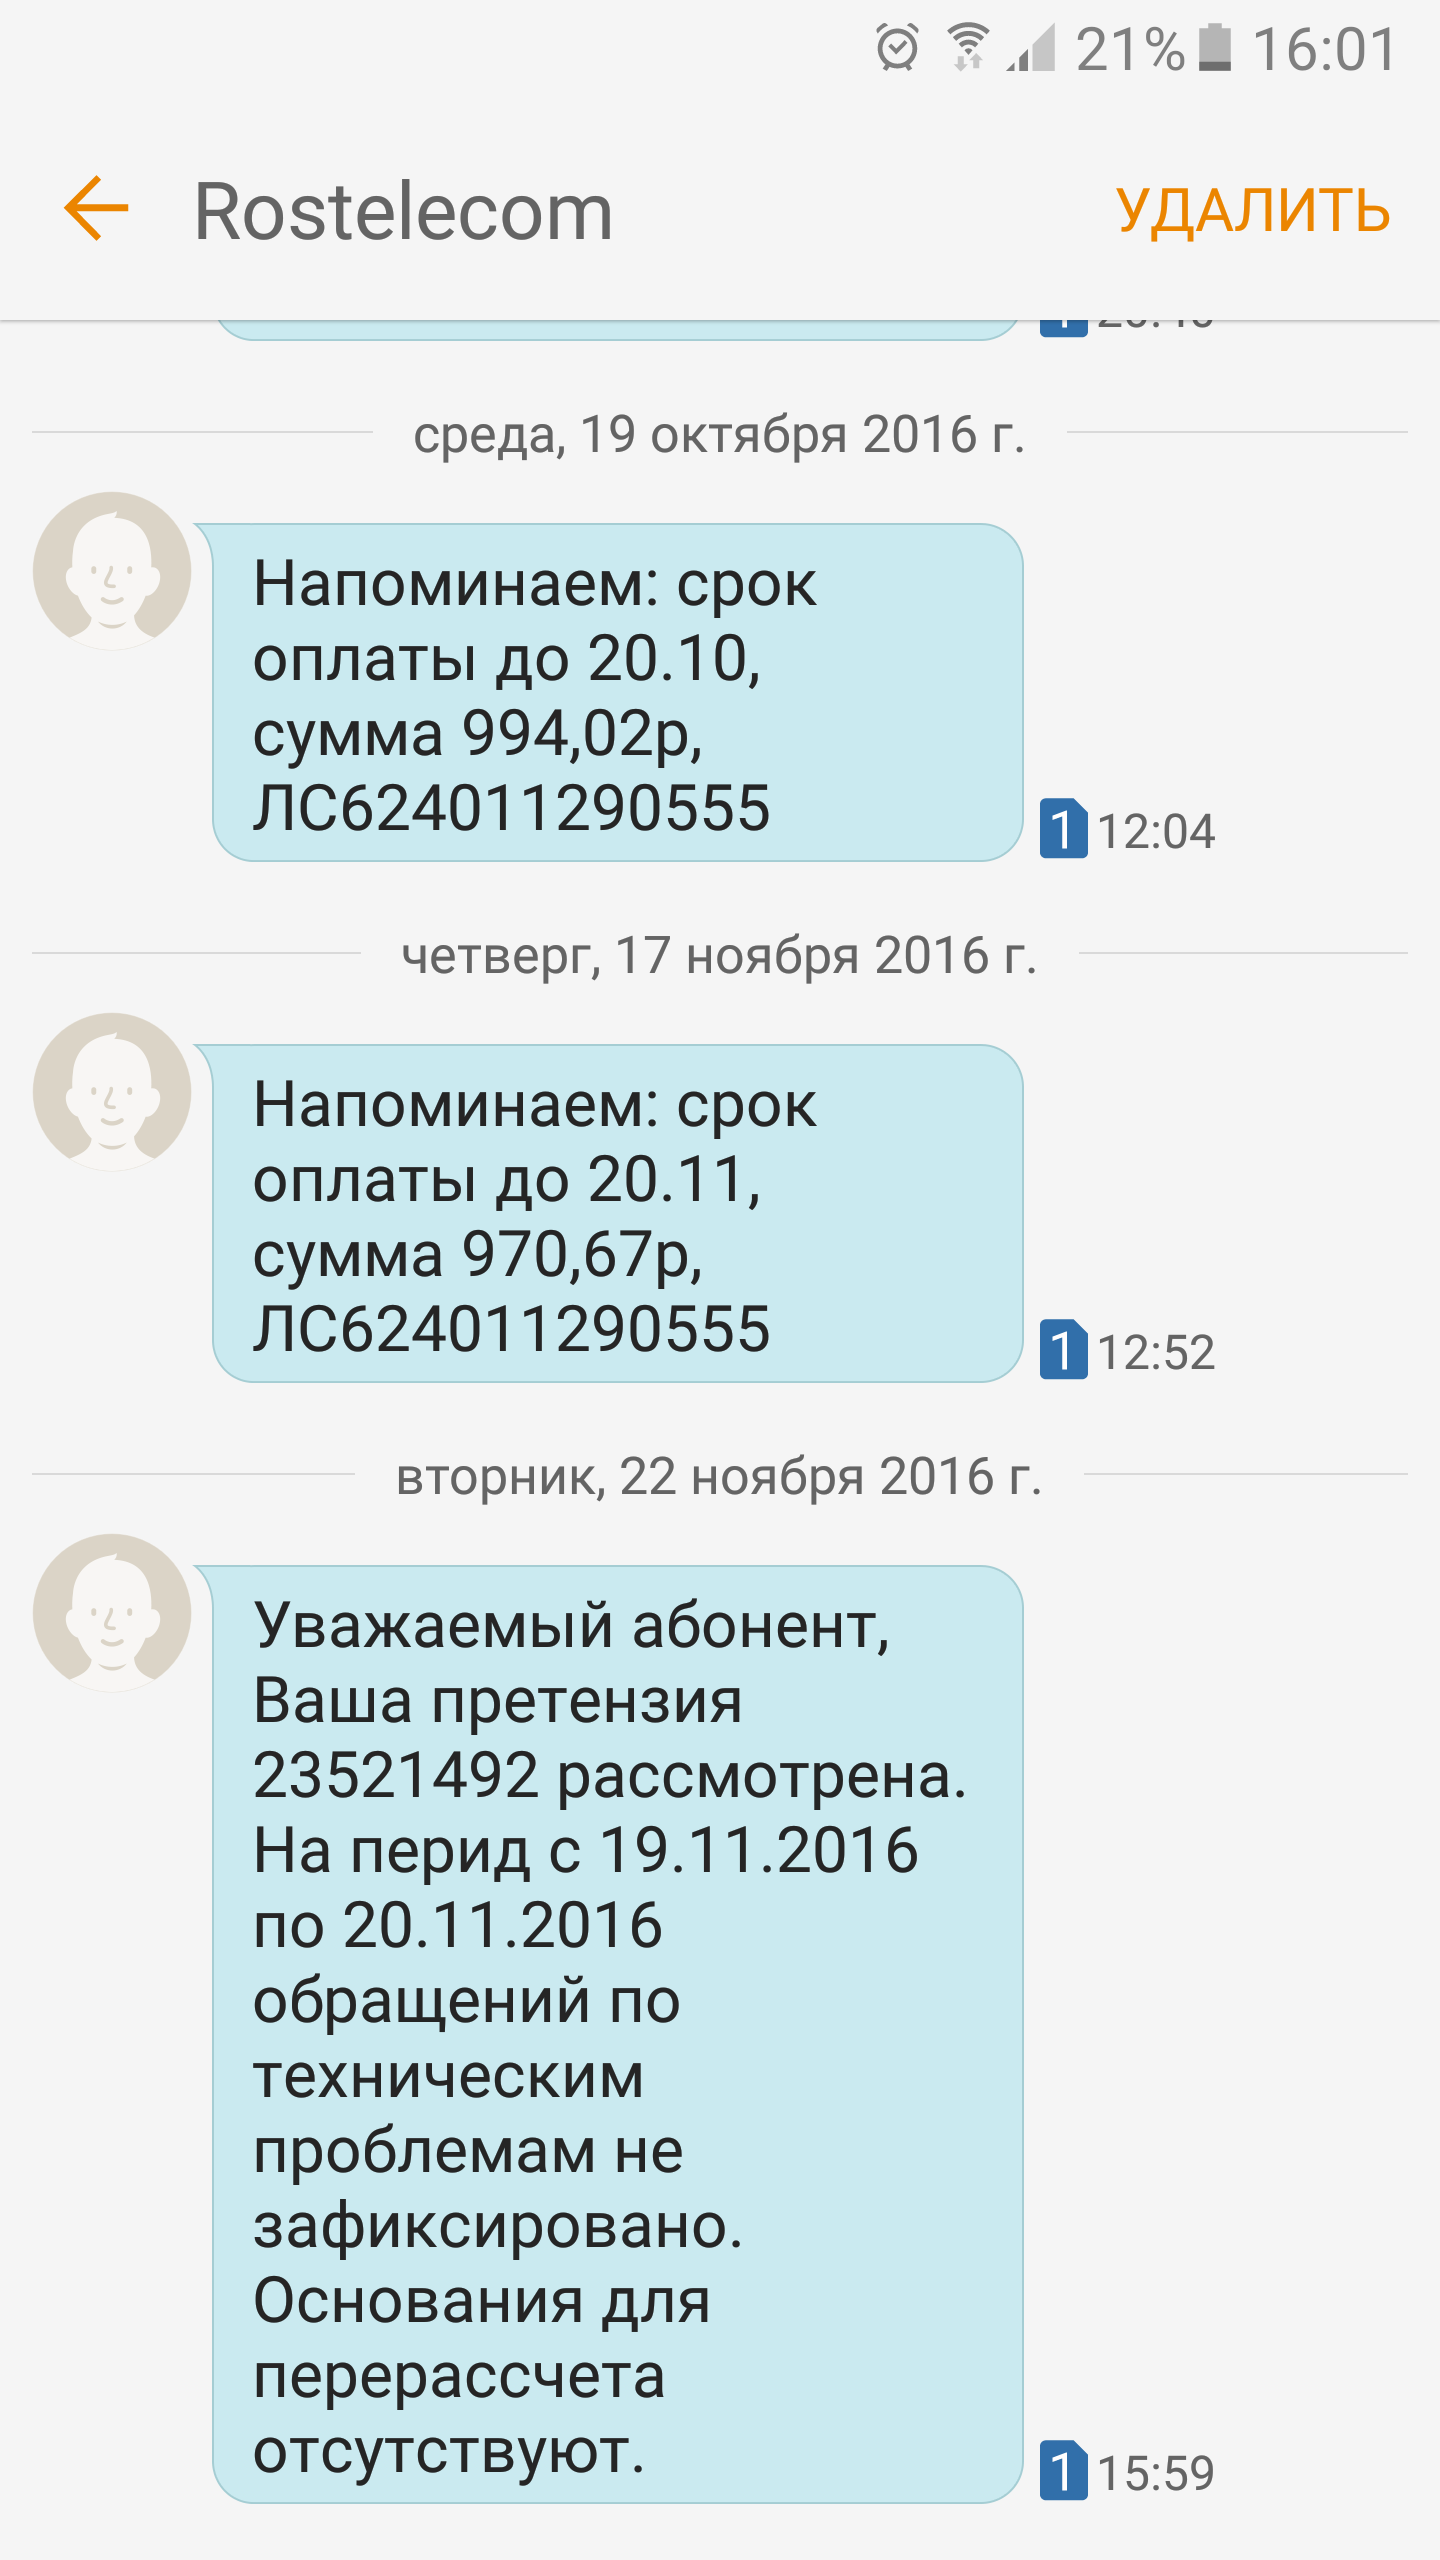 Саяногорск Инфо - screenshot_20161122-160125.png, Скачано: 321